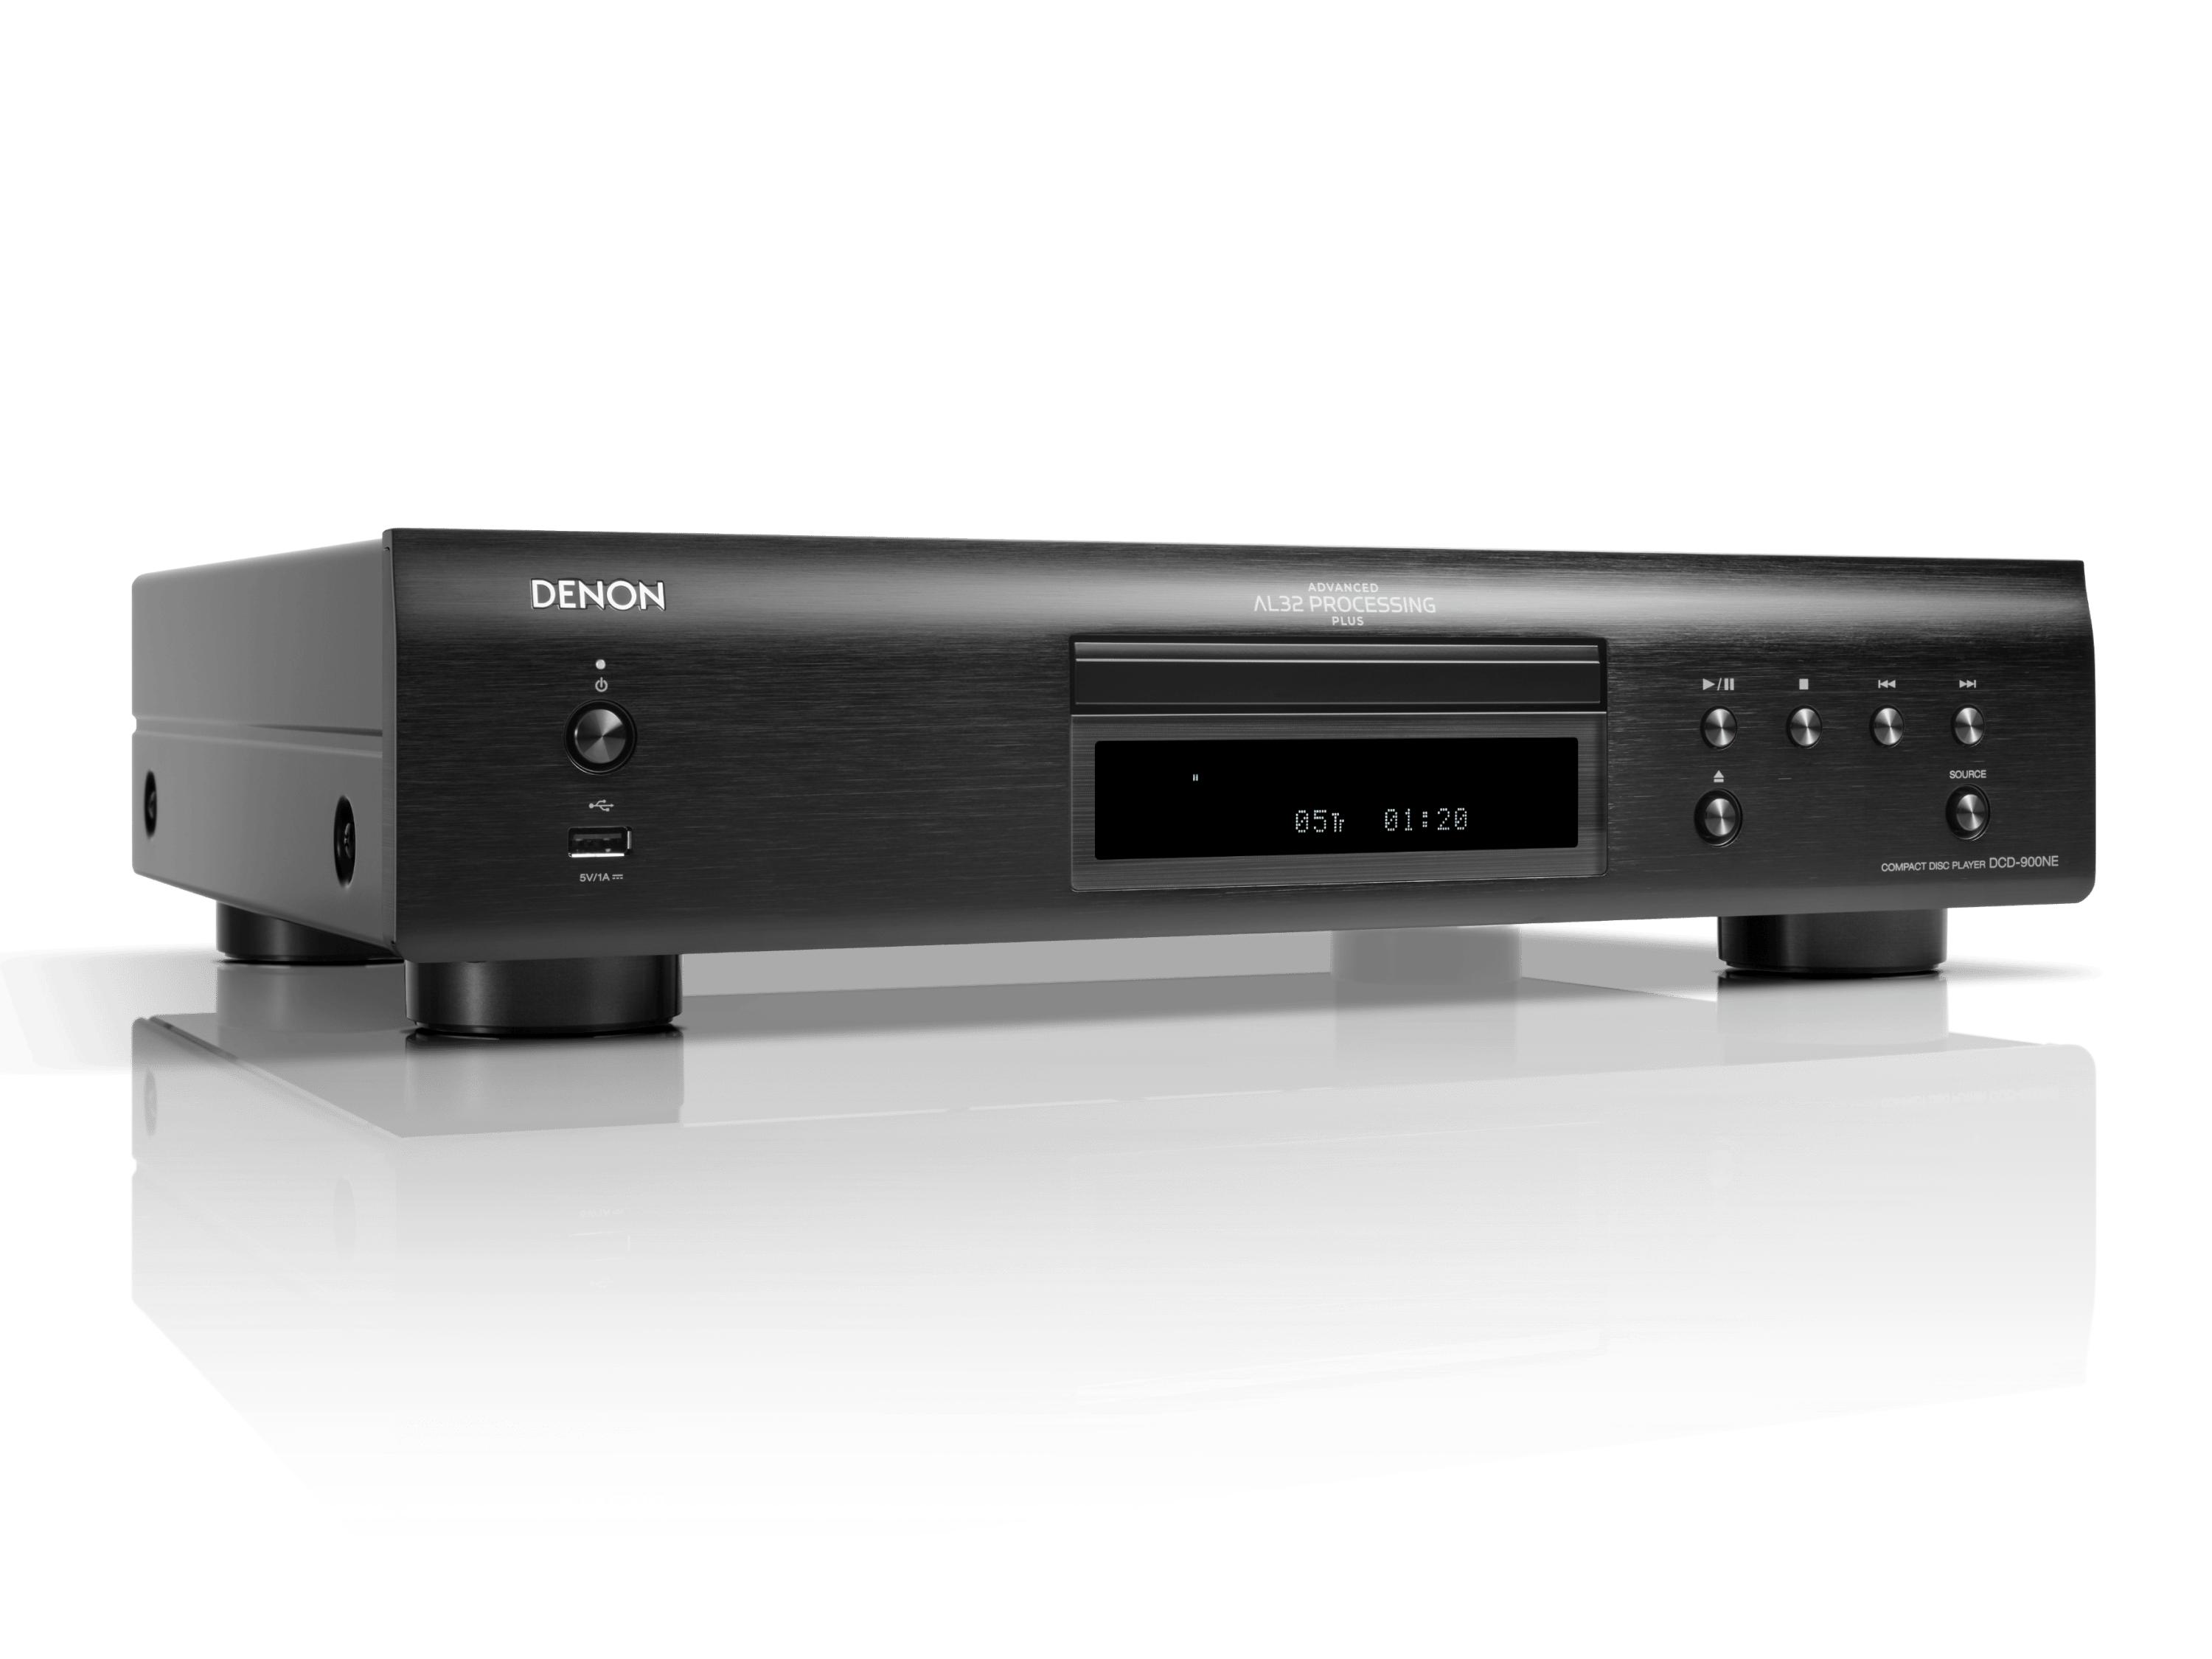 DCD-900NE - Lecteur de CD Denon DCD-900NE avec traitement Advanced